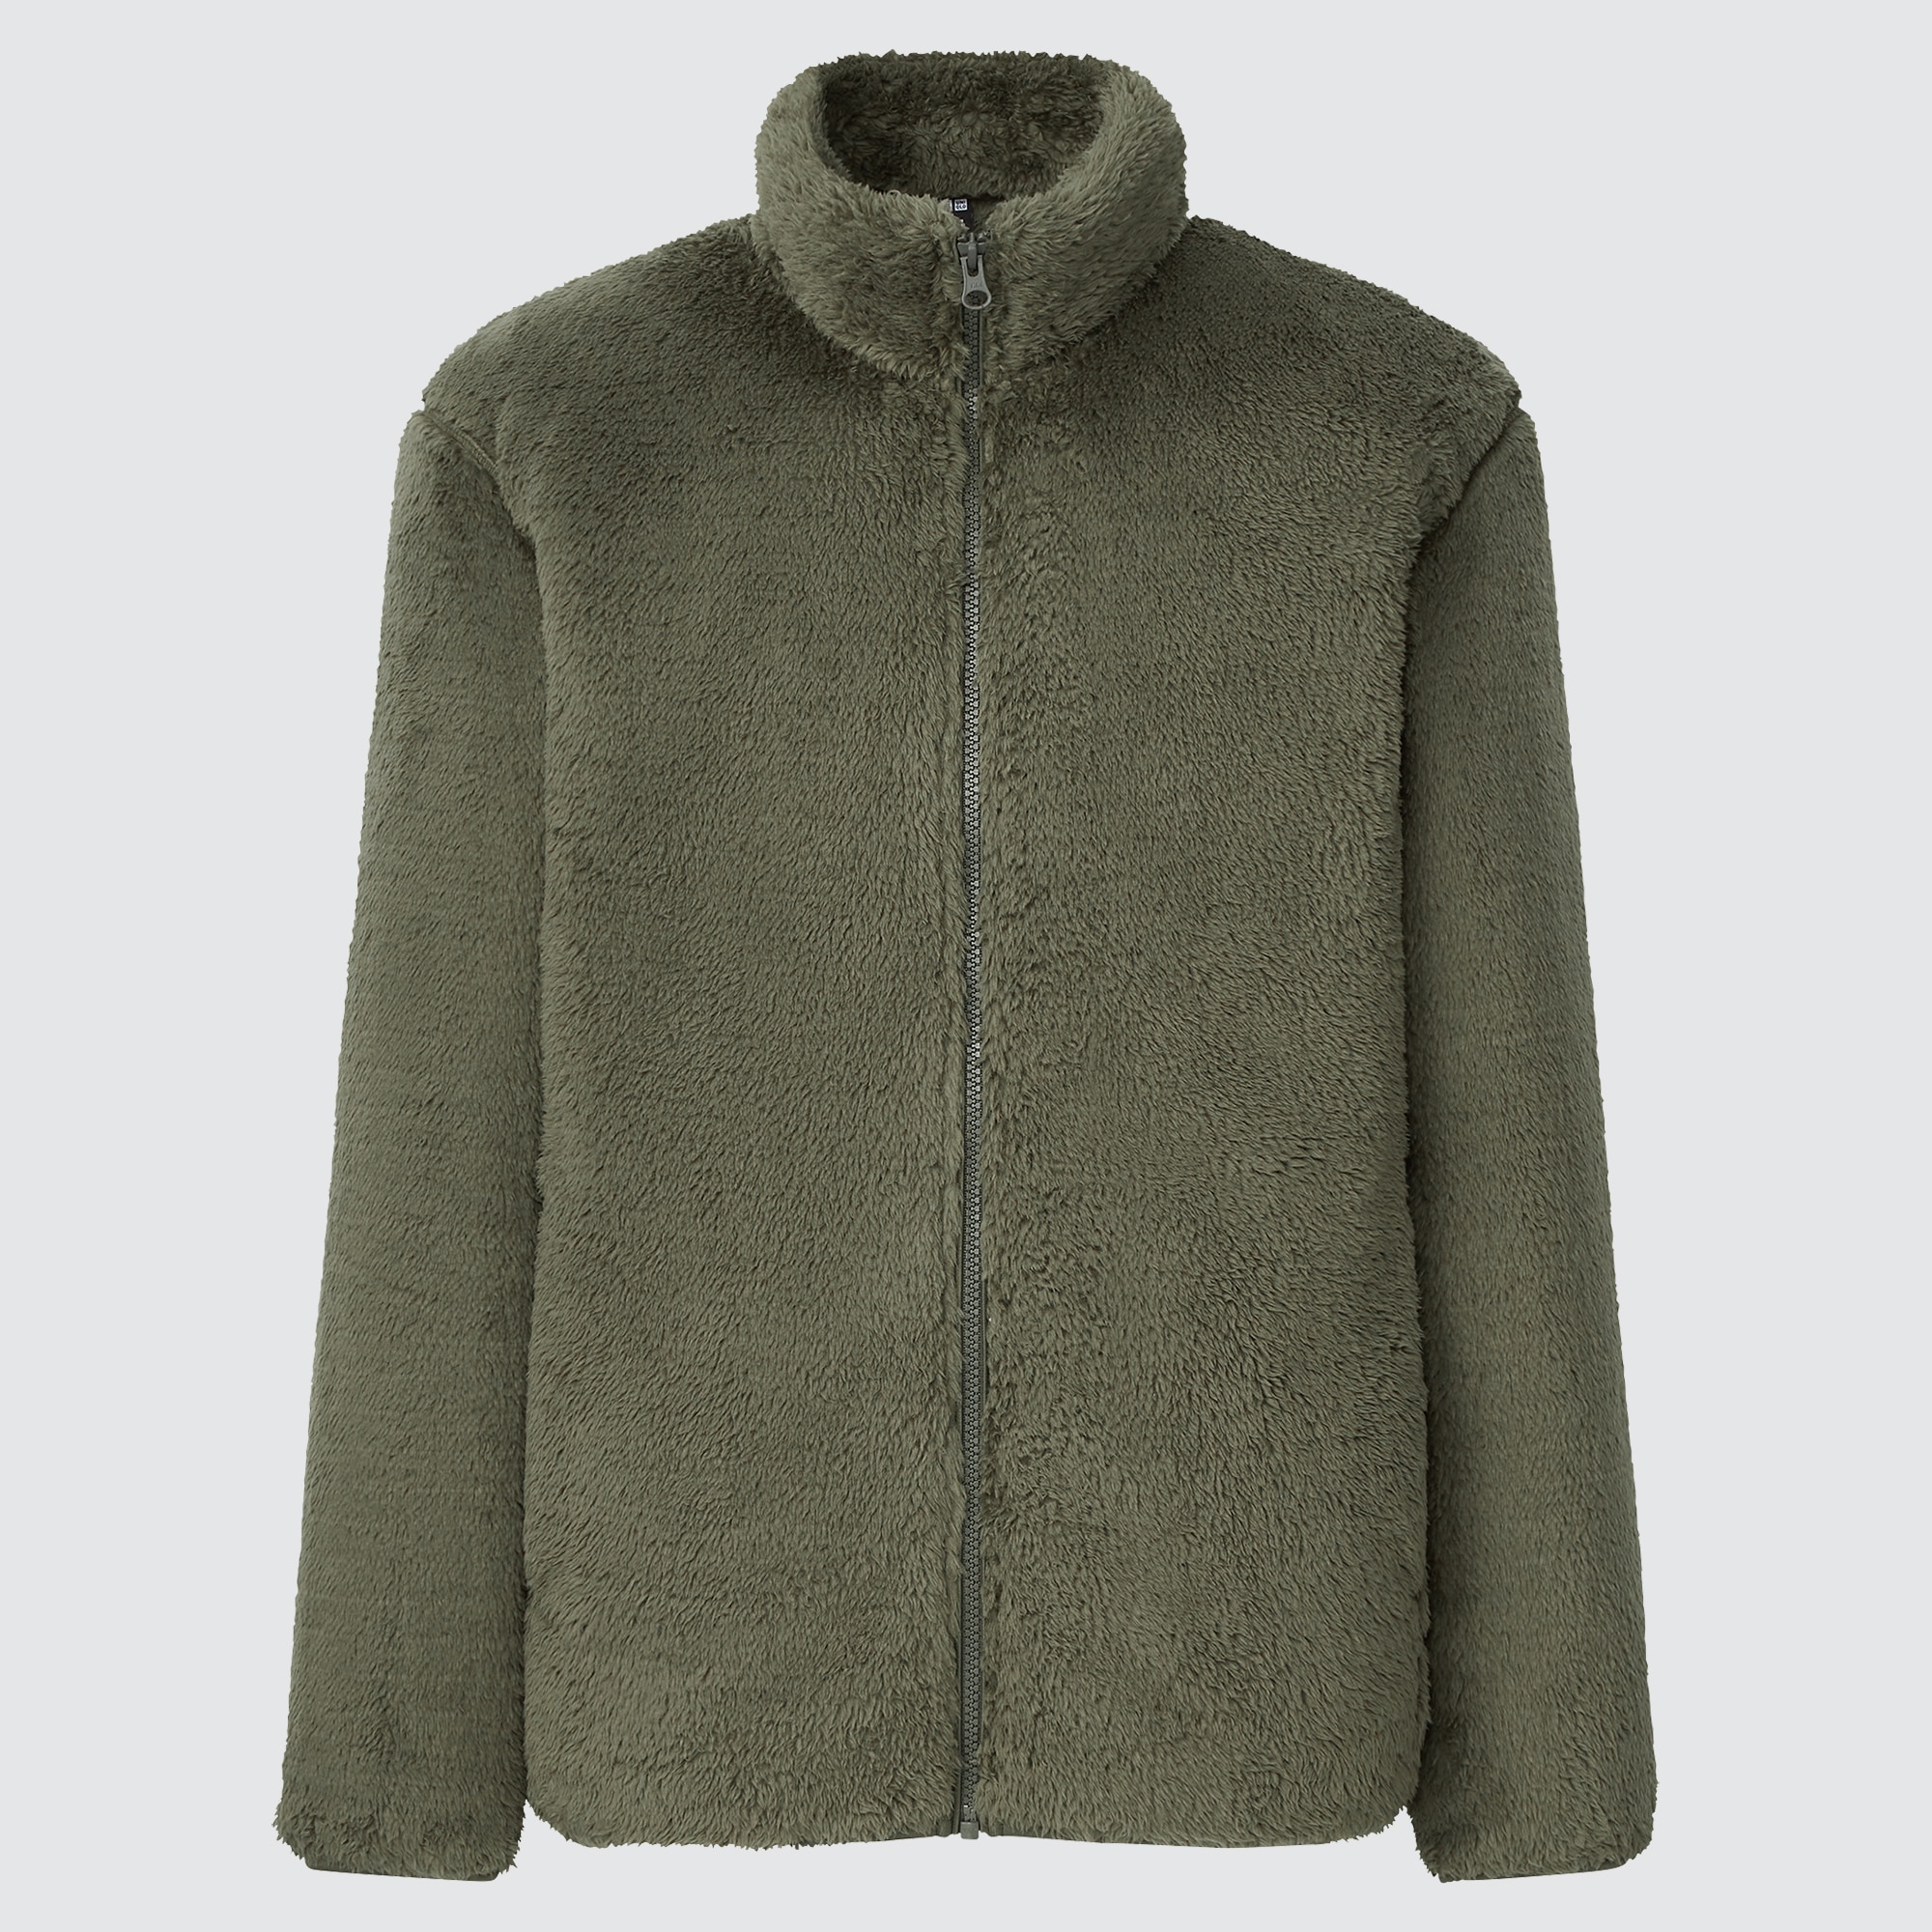 Uniqlo Fluffy Sherpa Fleece FullZip Brown Jacket M Size Pocket Outside  amp Inside  eBay